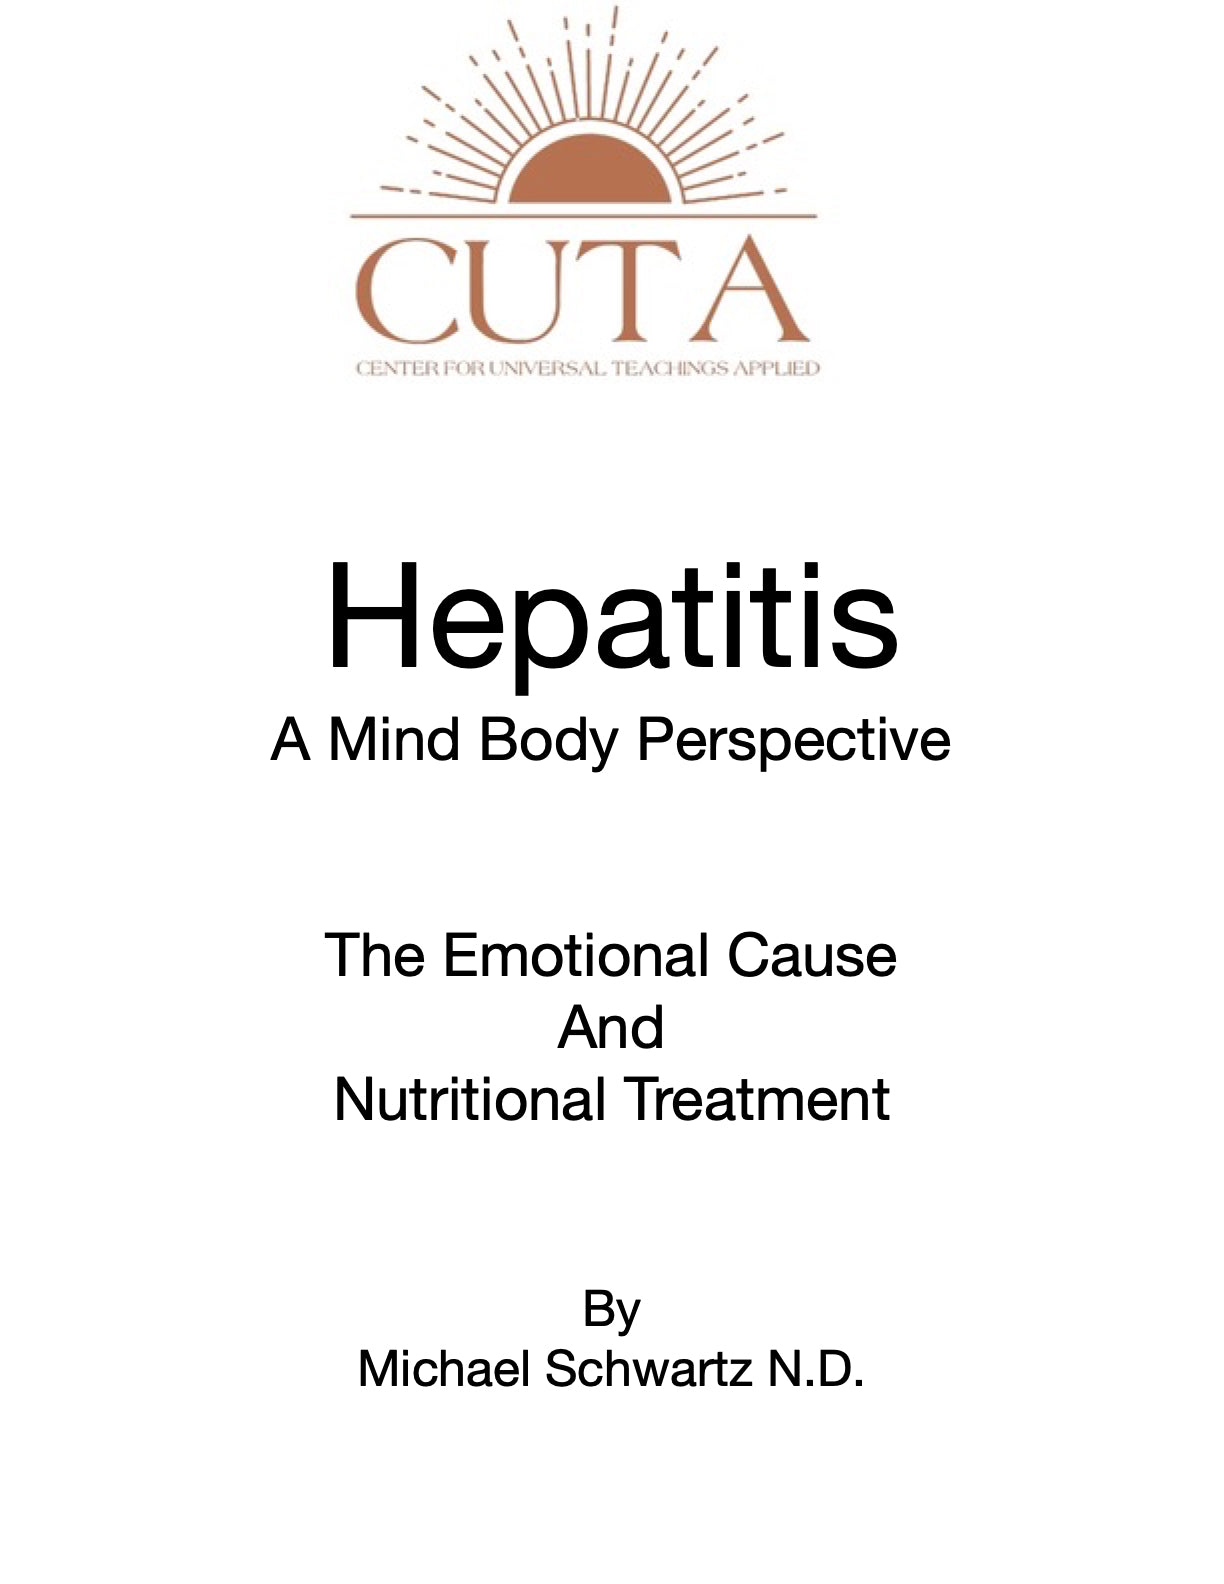 Hepatitis Booklet